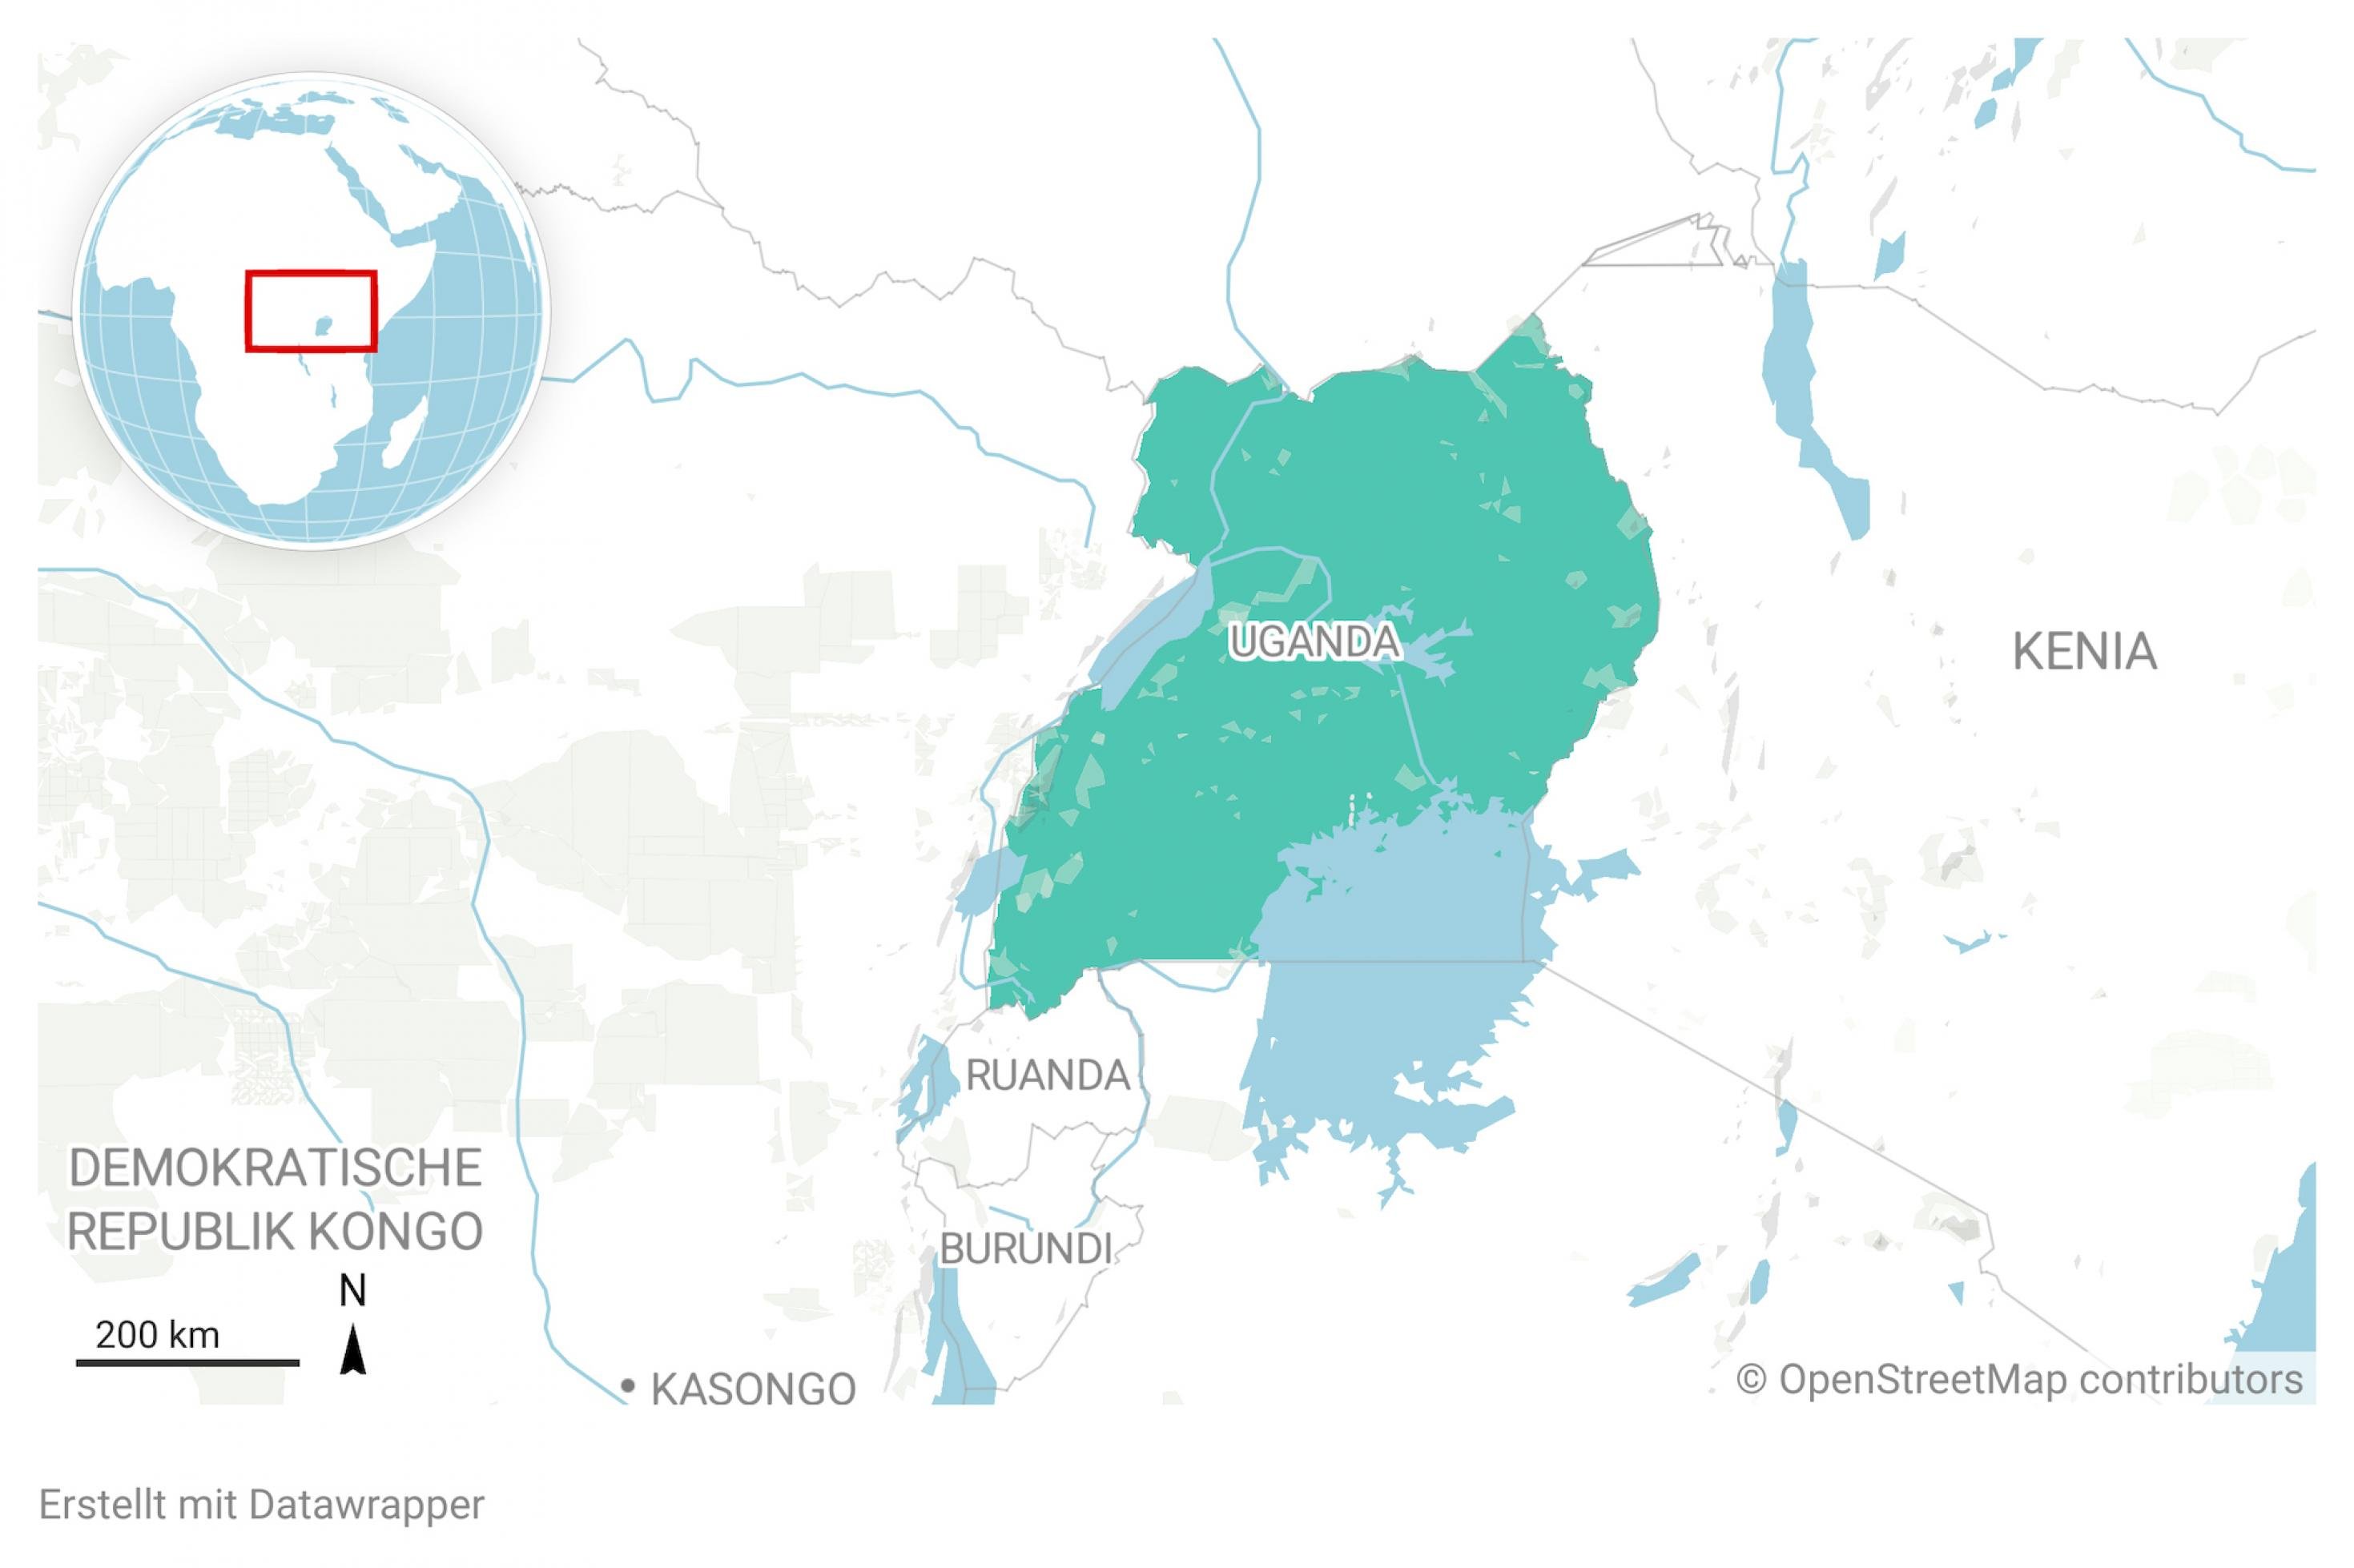 Ausschnitt aus einer Landkarte von Afrika. Das Land Uganda ist farblich hervorgehoben.